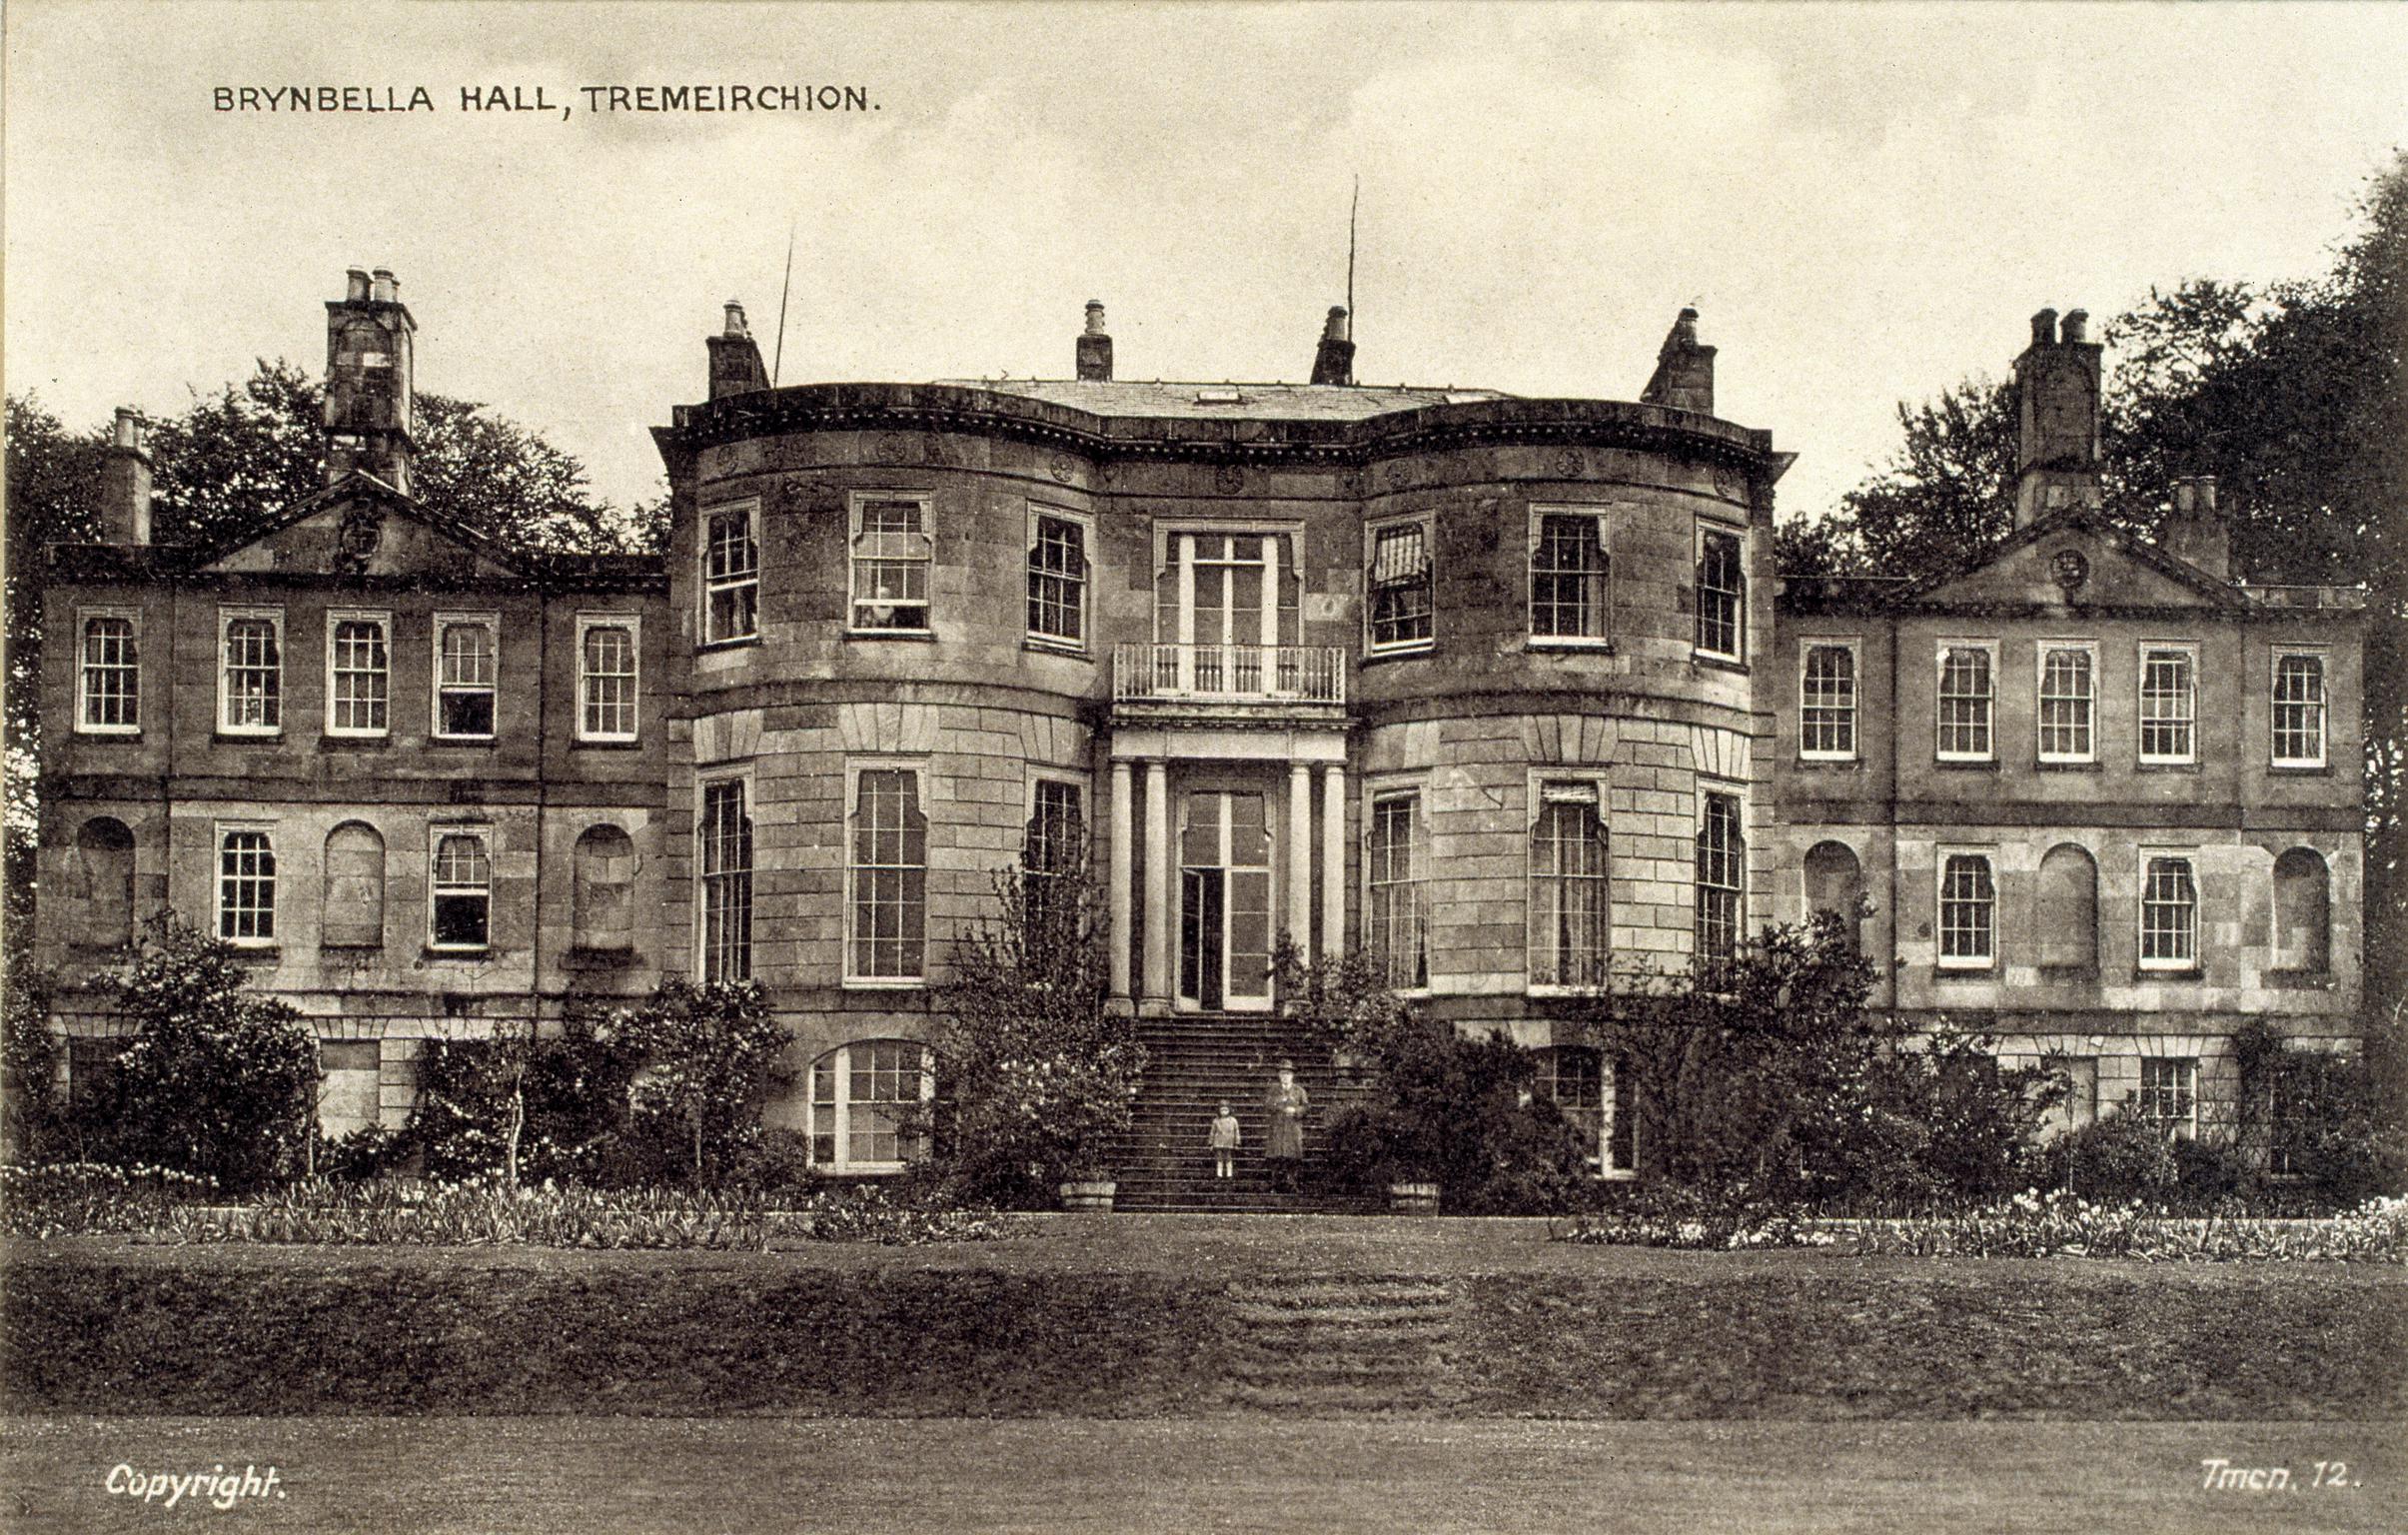 Brynbella Hall, Tremeirchion